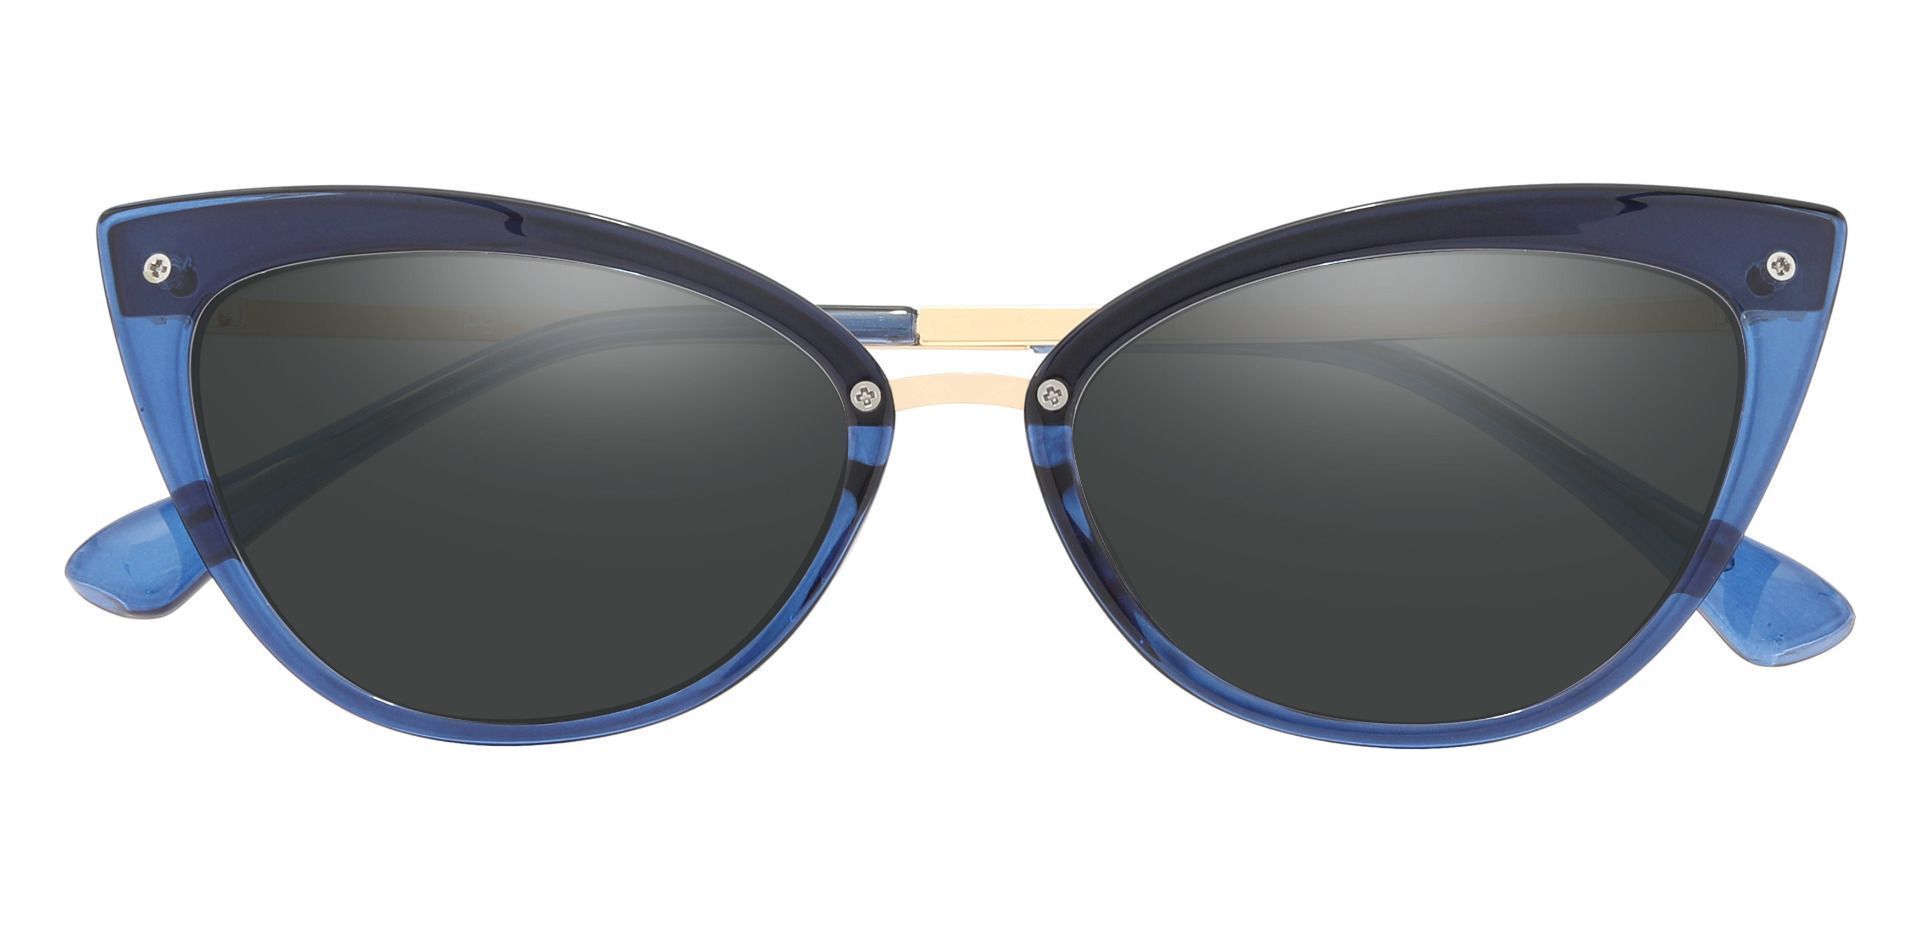 Glenda Cat Eye Prescription Sunglasses - Blue Frame With Gray Lenses